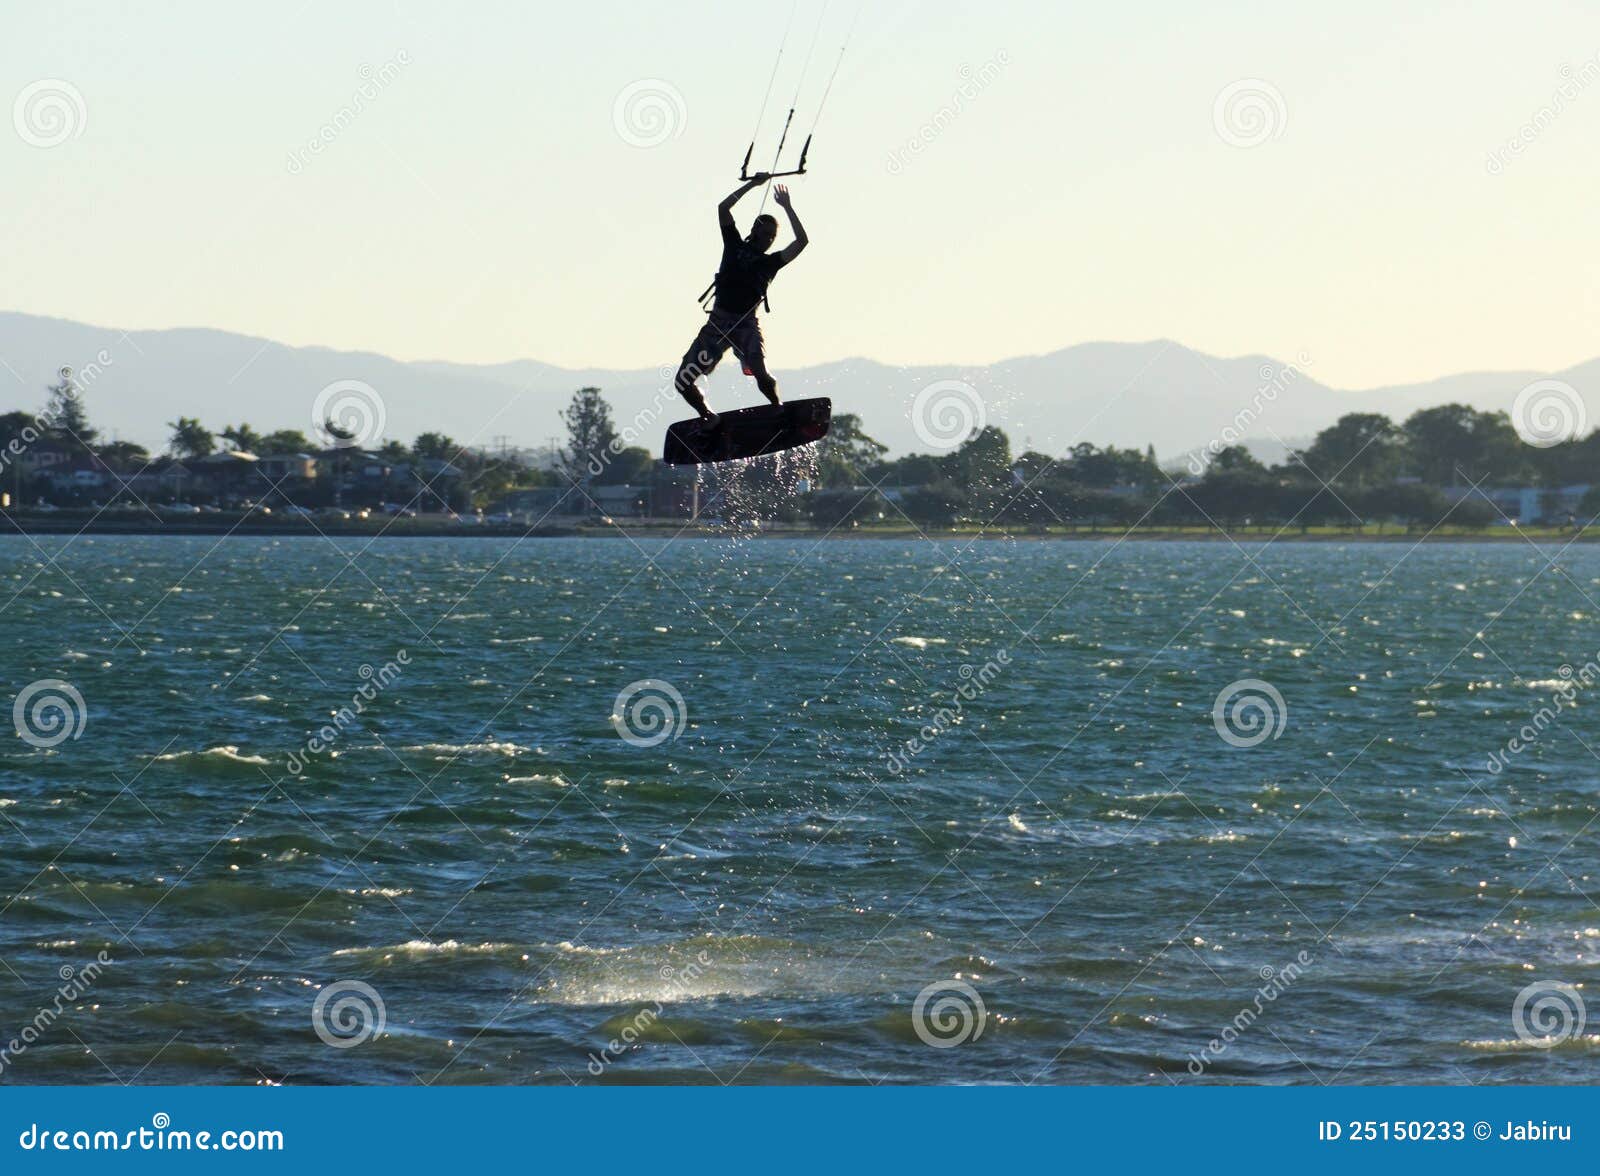 airborne kite surfer